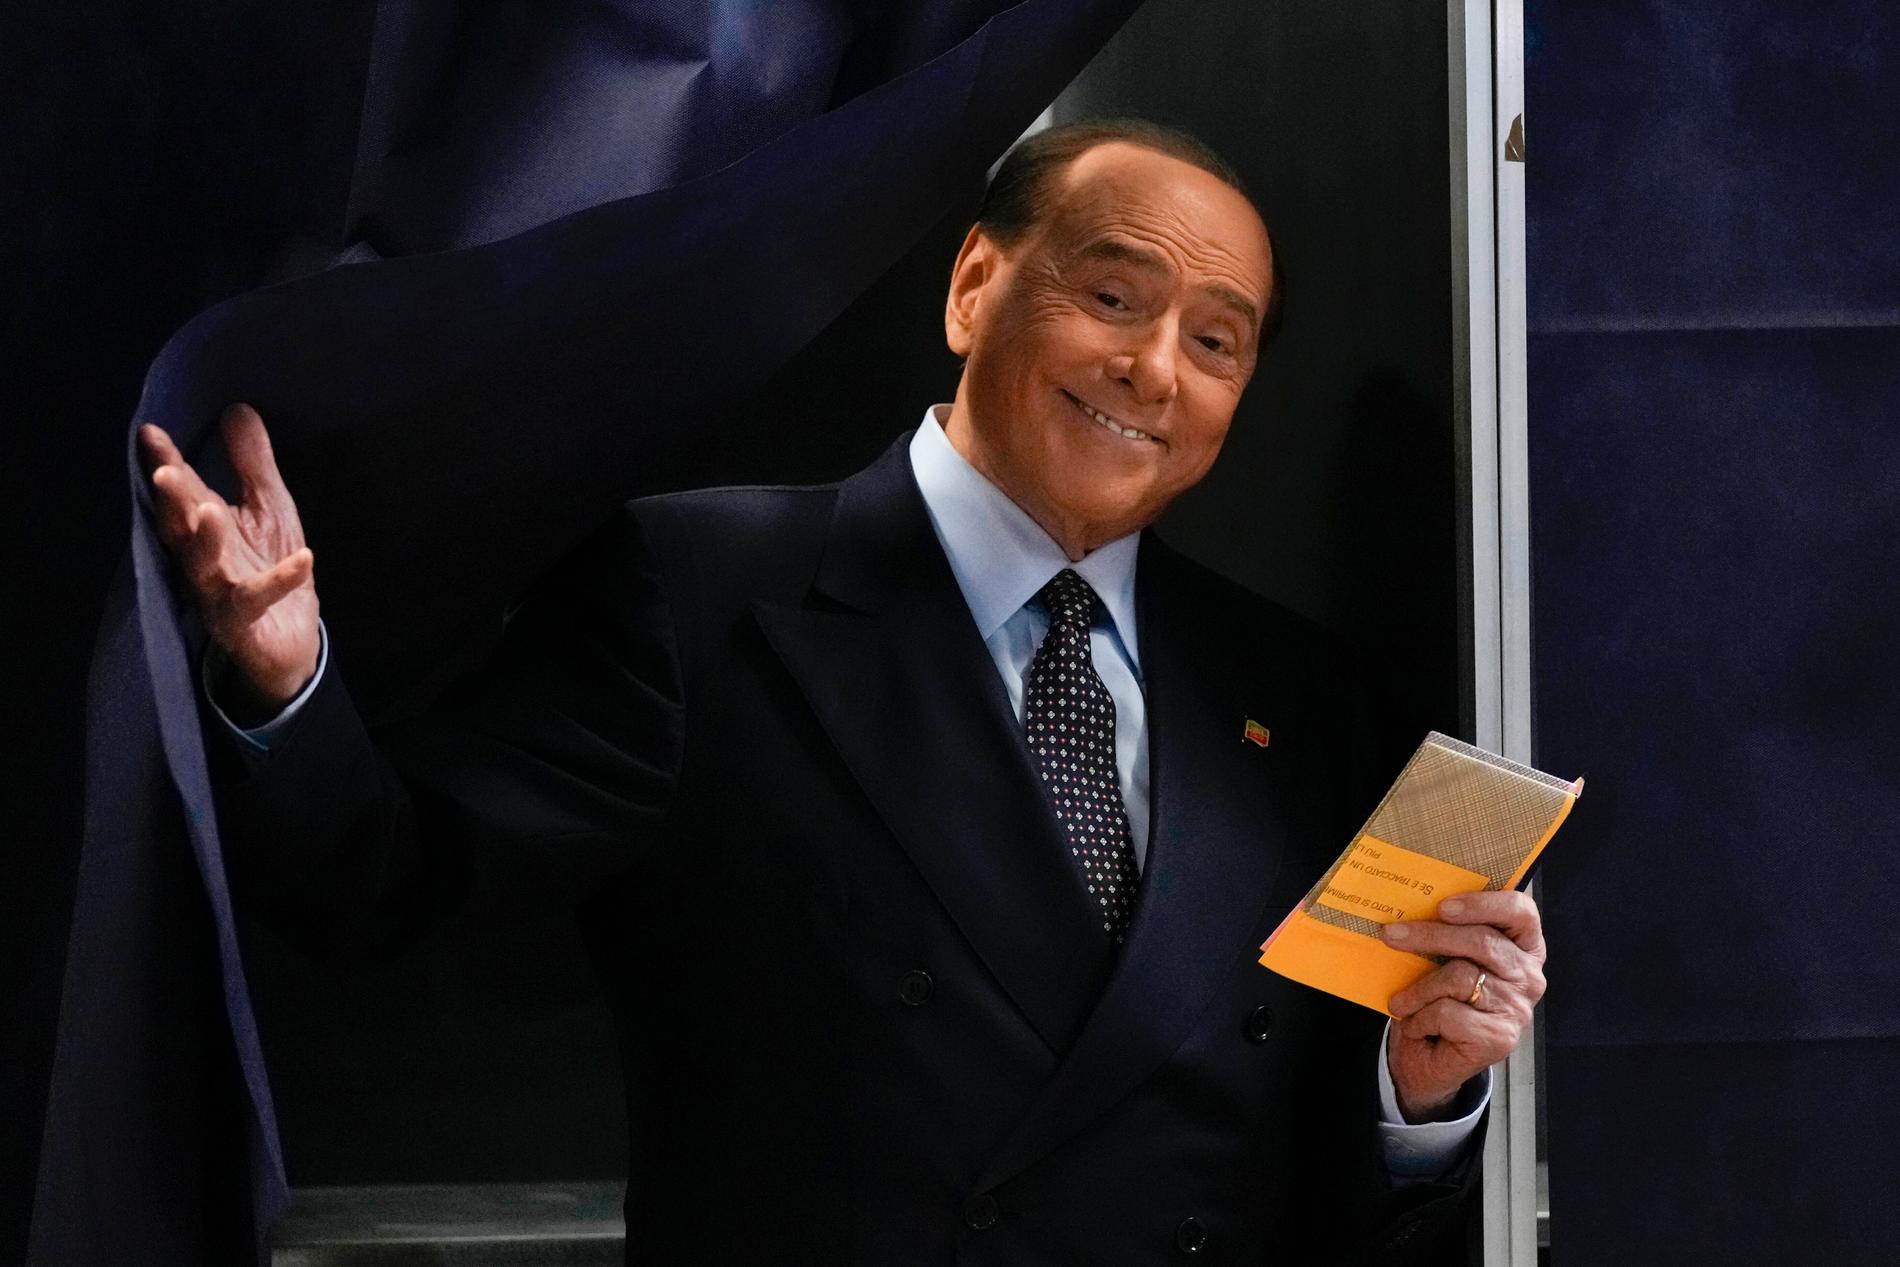 Silvio Berlusconi, den 85-årige ledaren för Forza Italia, begav sig till en vallokal i norditalienska Milano.